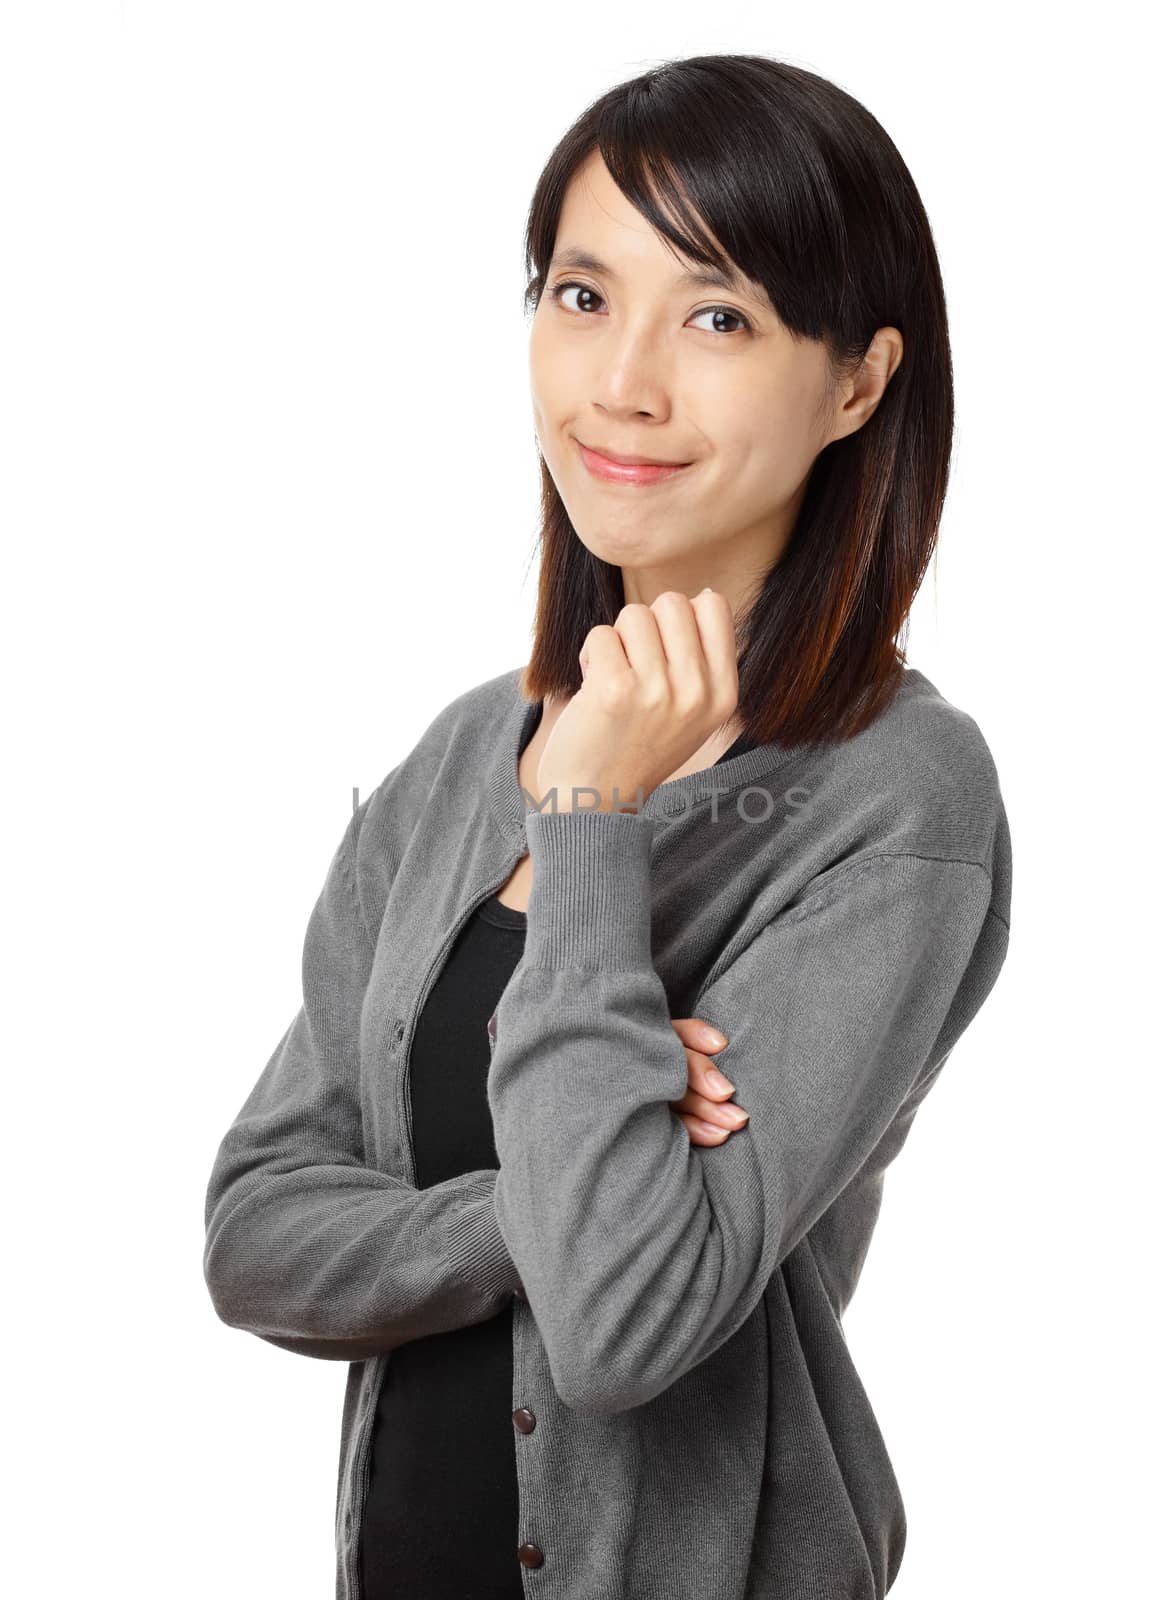 Asian woman portrait